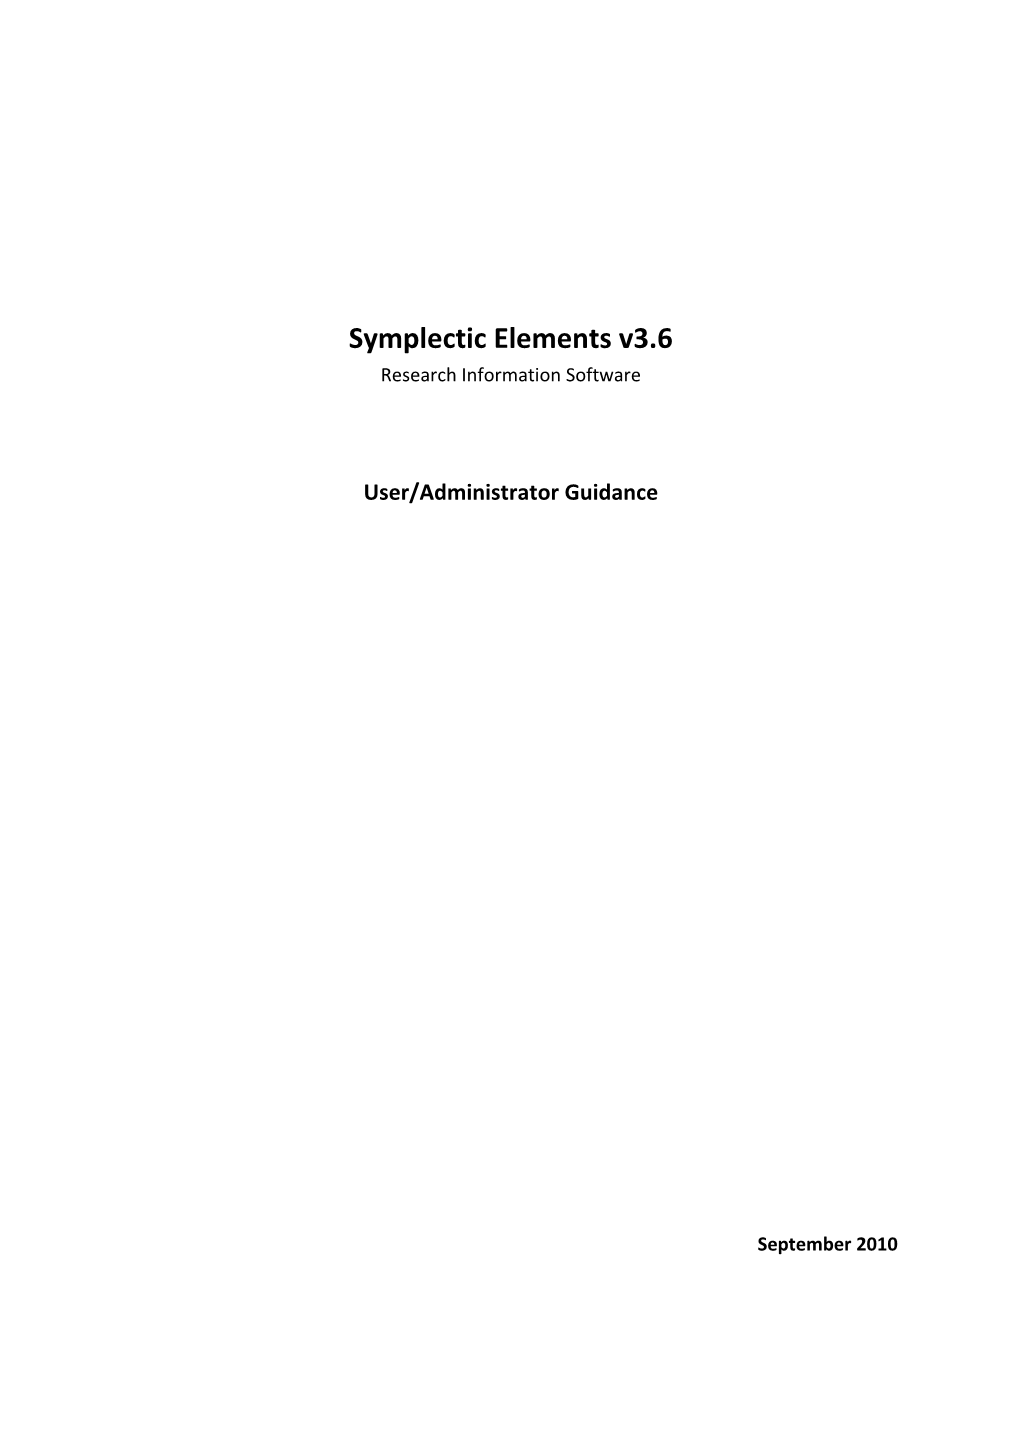 Symplectic Elements V3.6